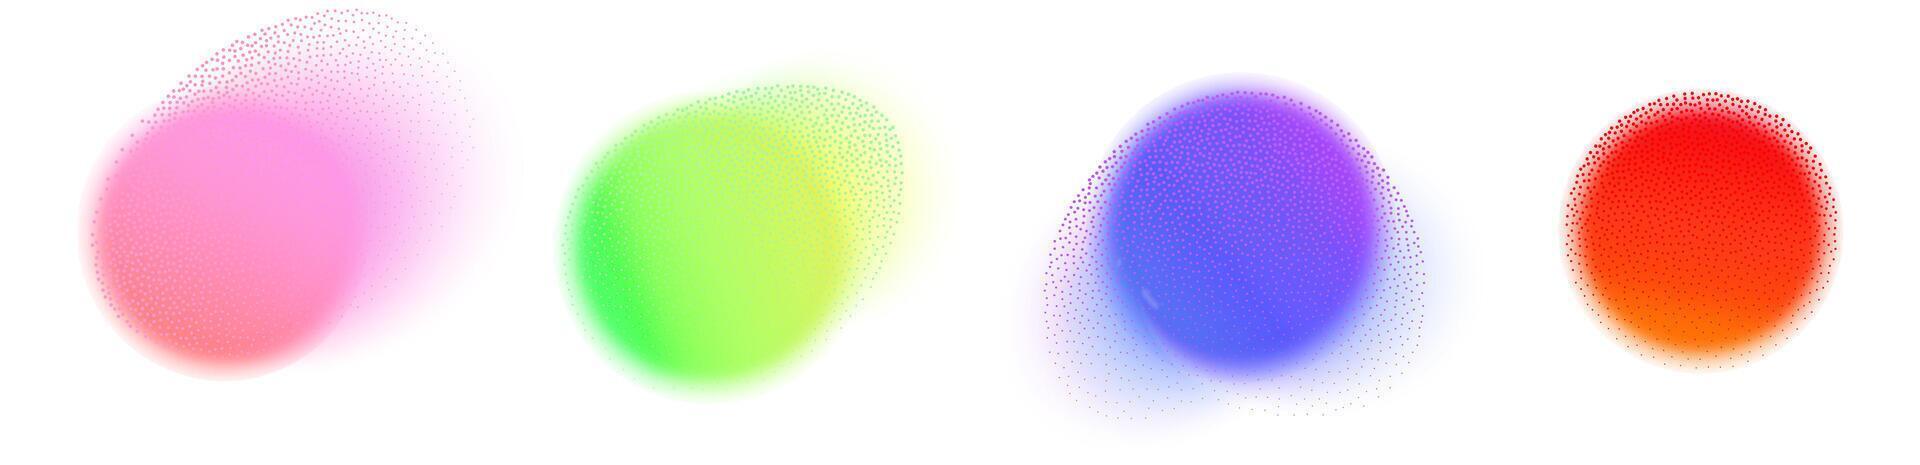 reeks van vector illustratie met een abstract radiaal helling vervagen in tinten van paars groen en blauw.levendig reeks van aura gloed rondes met een zacht punt neon element.kleur holografische ronde vormen.